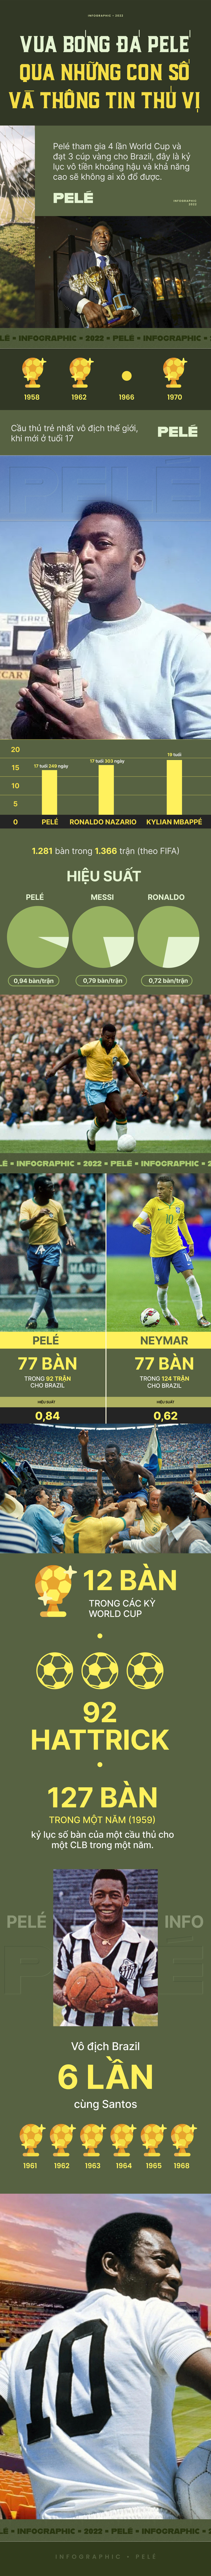 Infographic: Vua bóng đá Pelé vĩ đại tới đâu mà được Brazil tổ chức quốc tang tiễn đưa? - Ảnh 1.